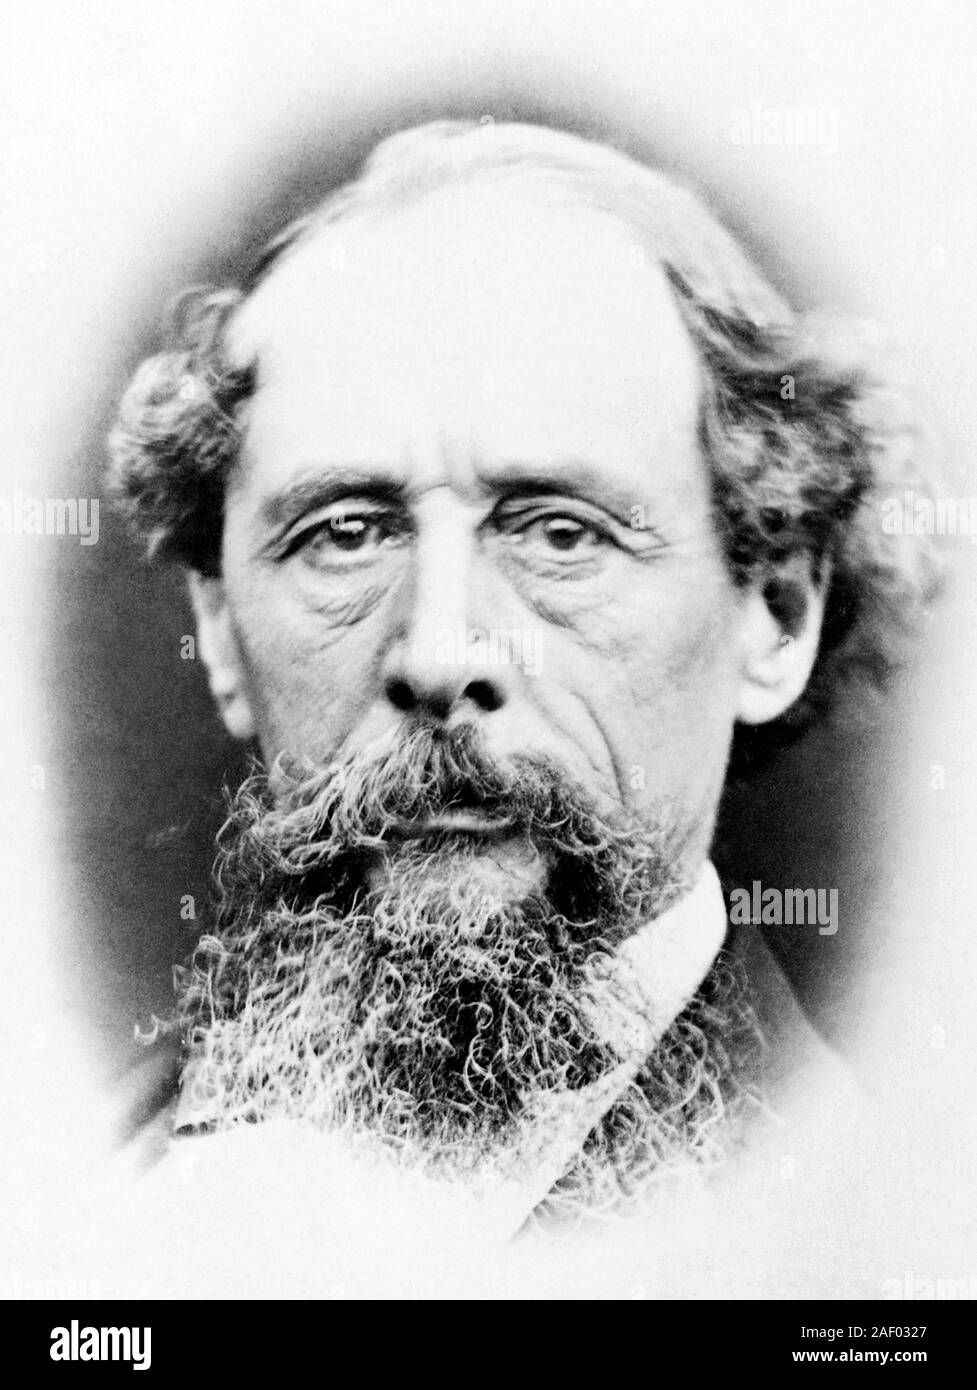 Vintage foto ritratto autore inglese Charles Dickens (1812 - 1870). Foto di circa 1865. Foto Stock